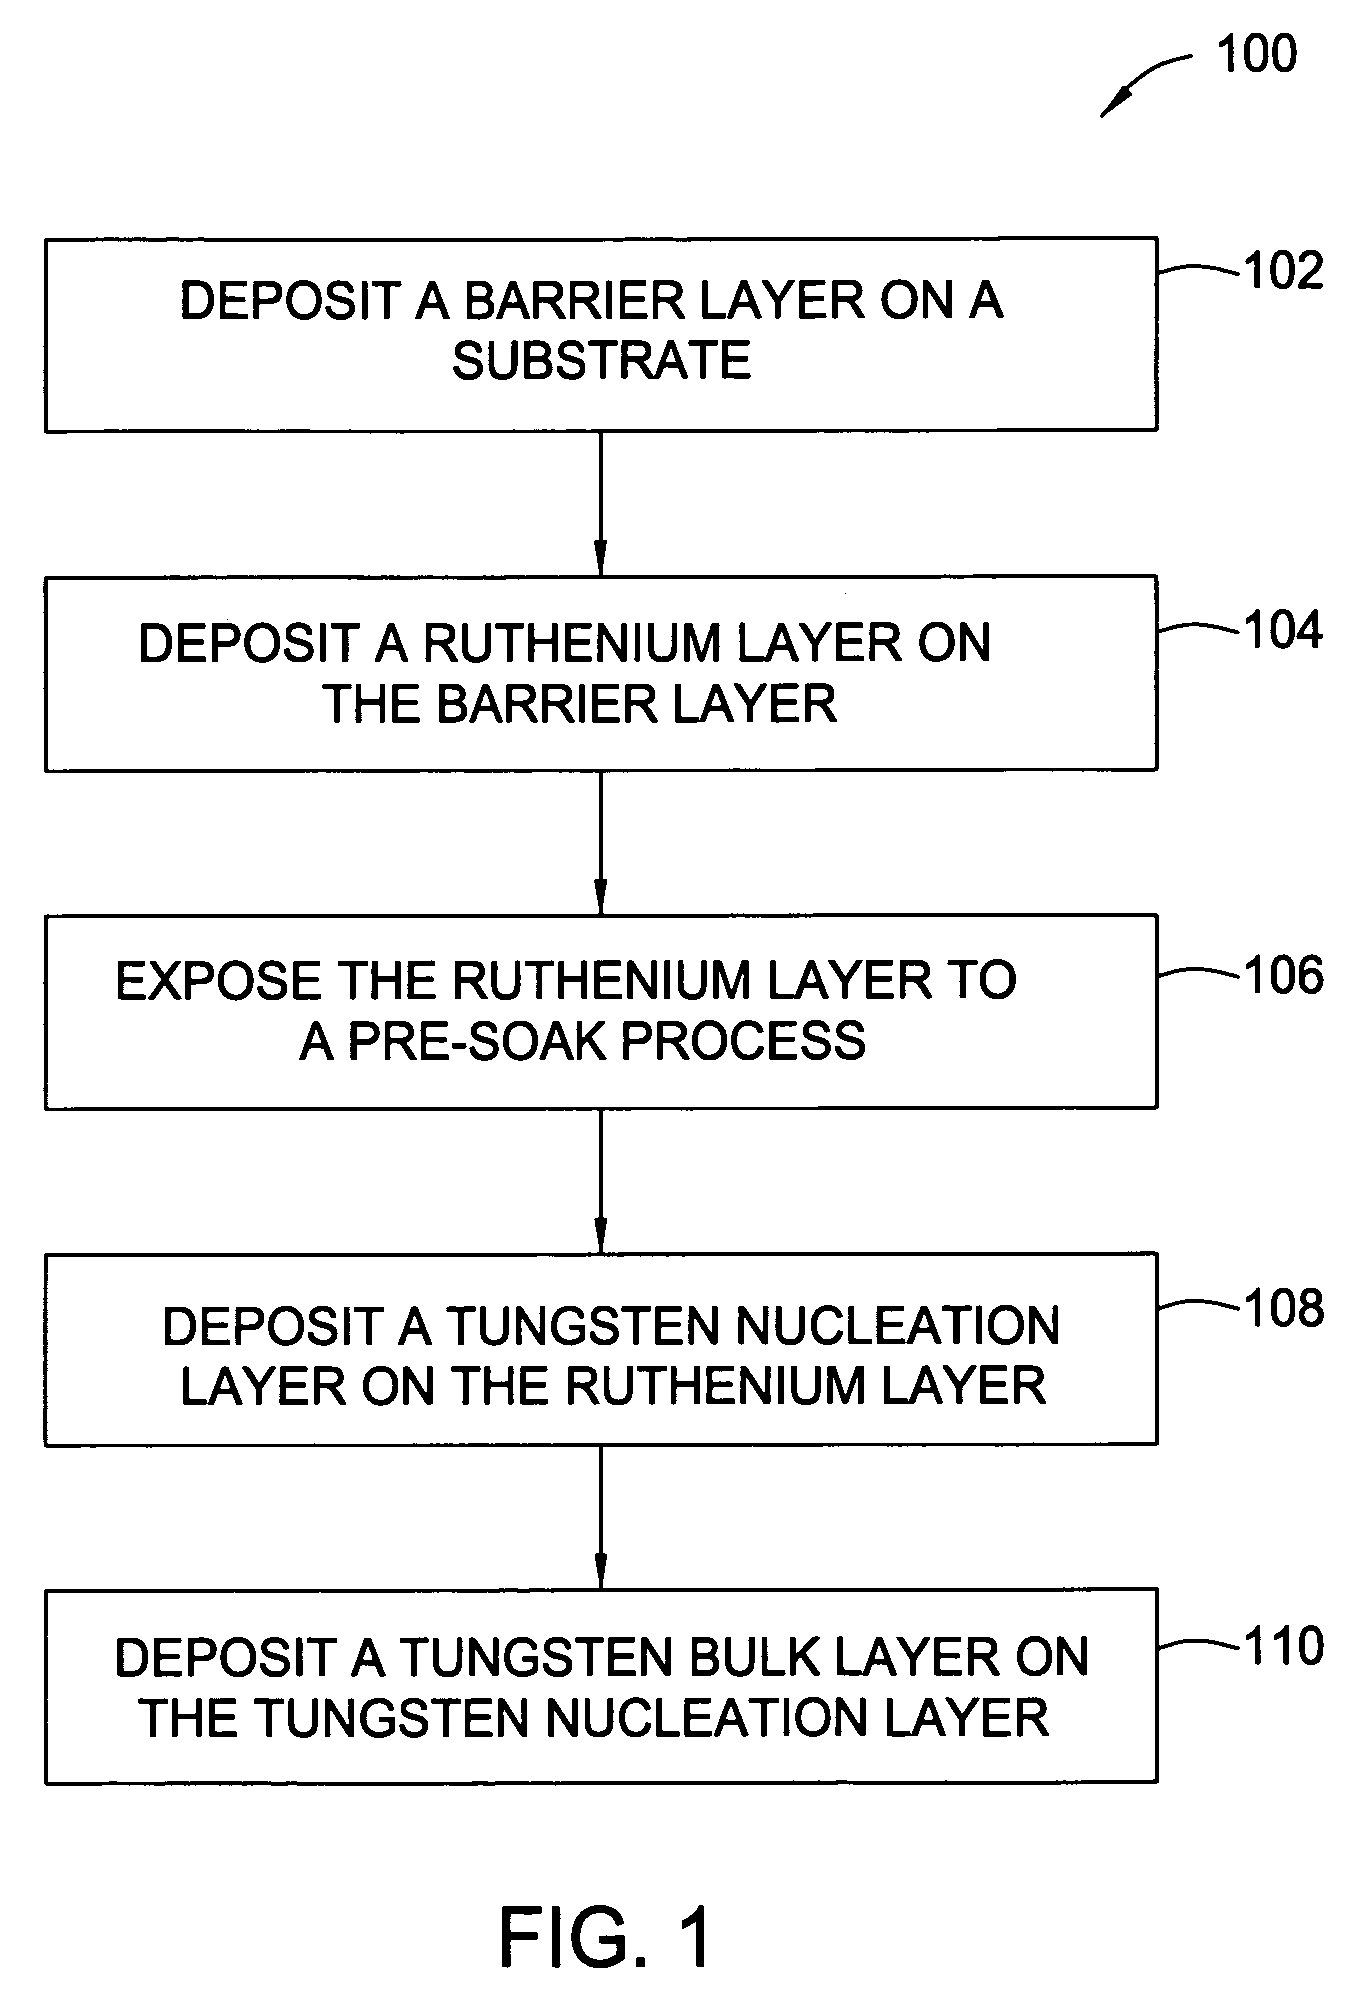 Ruthenium as an underlayer for tungsten film deposition